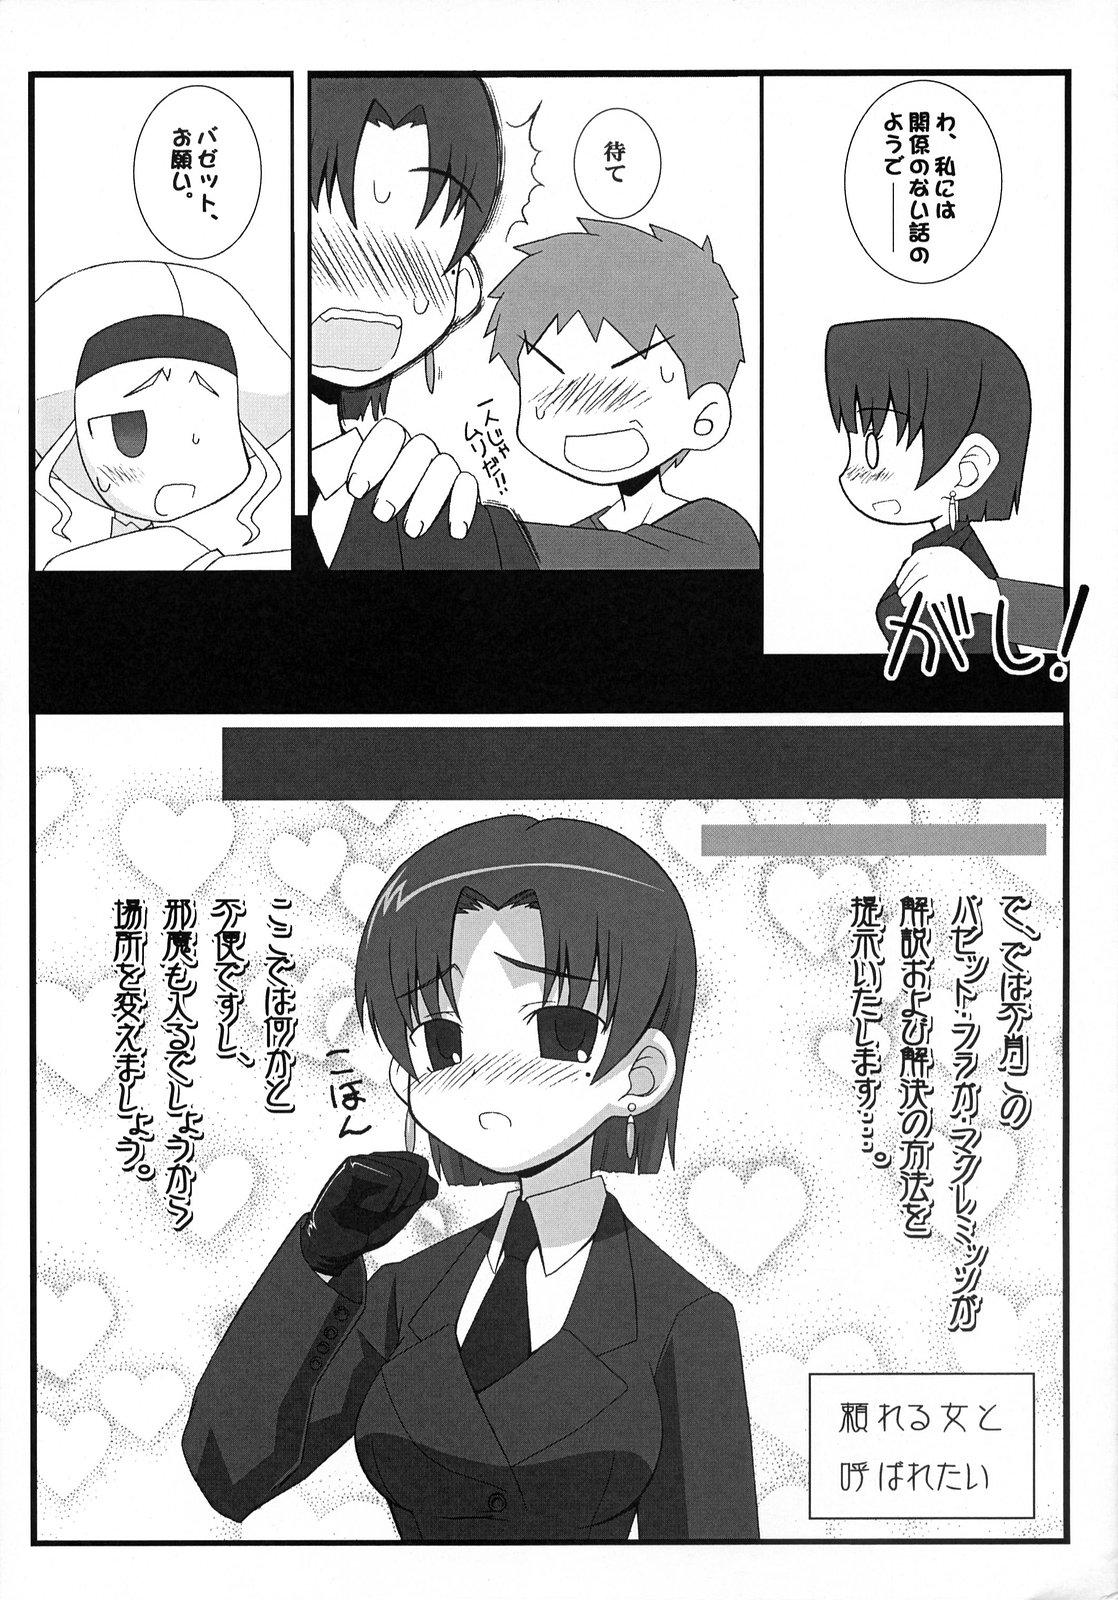 Pica (SC36) [Gachinko Shobou (Koban)] Yappari Leysritt (kyonyuu no hou)] wa eroi na. (Fate/hollow ataraxia) - Fate stay night Fate hollow ataraxia Stepmother - Page 5